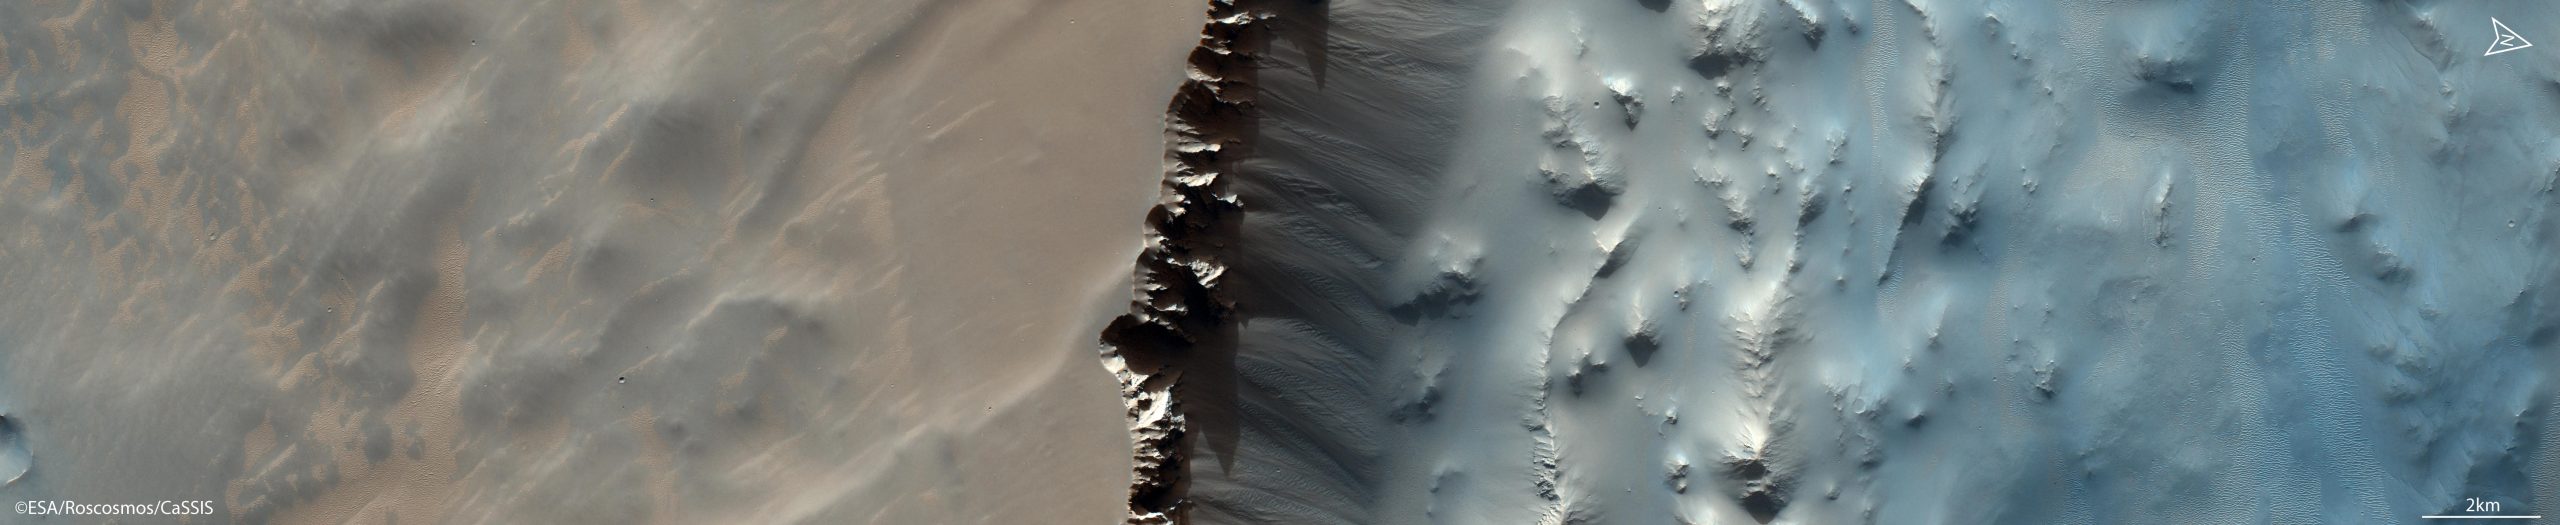 这张火星图片里的内容并不像看到的那样简单